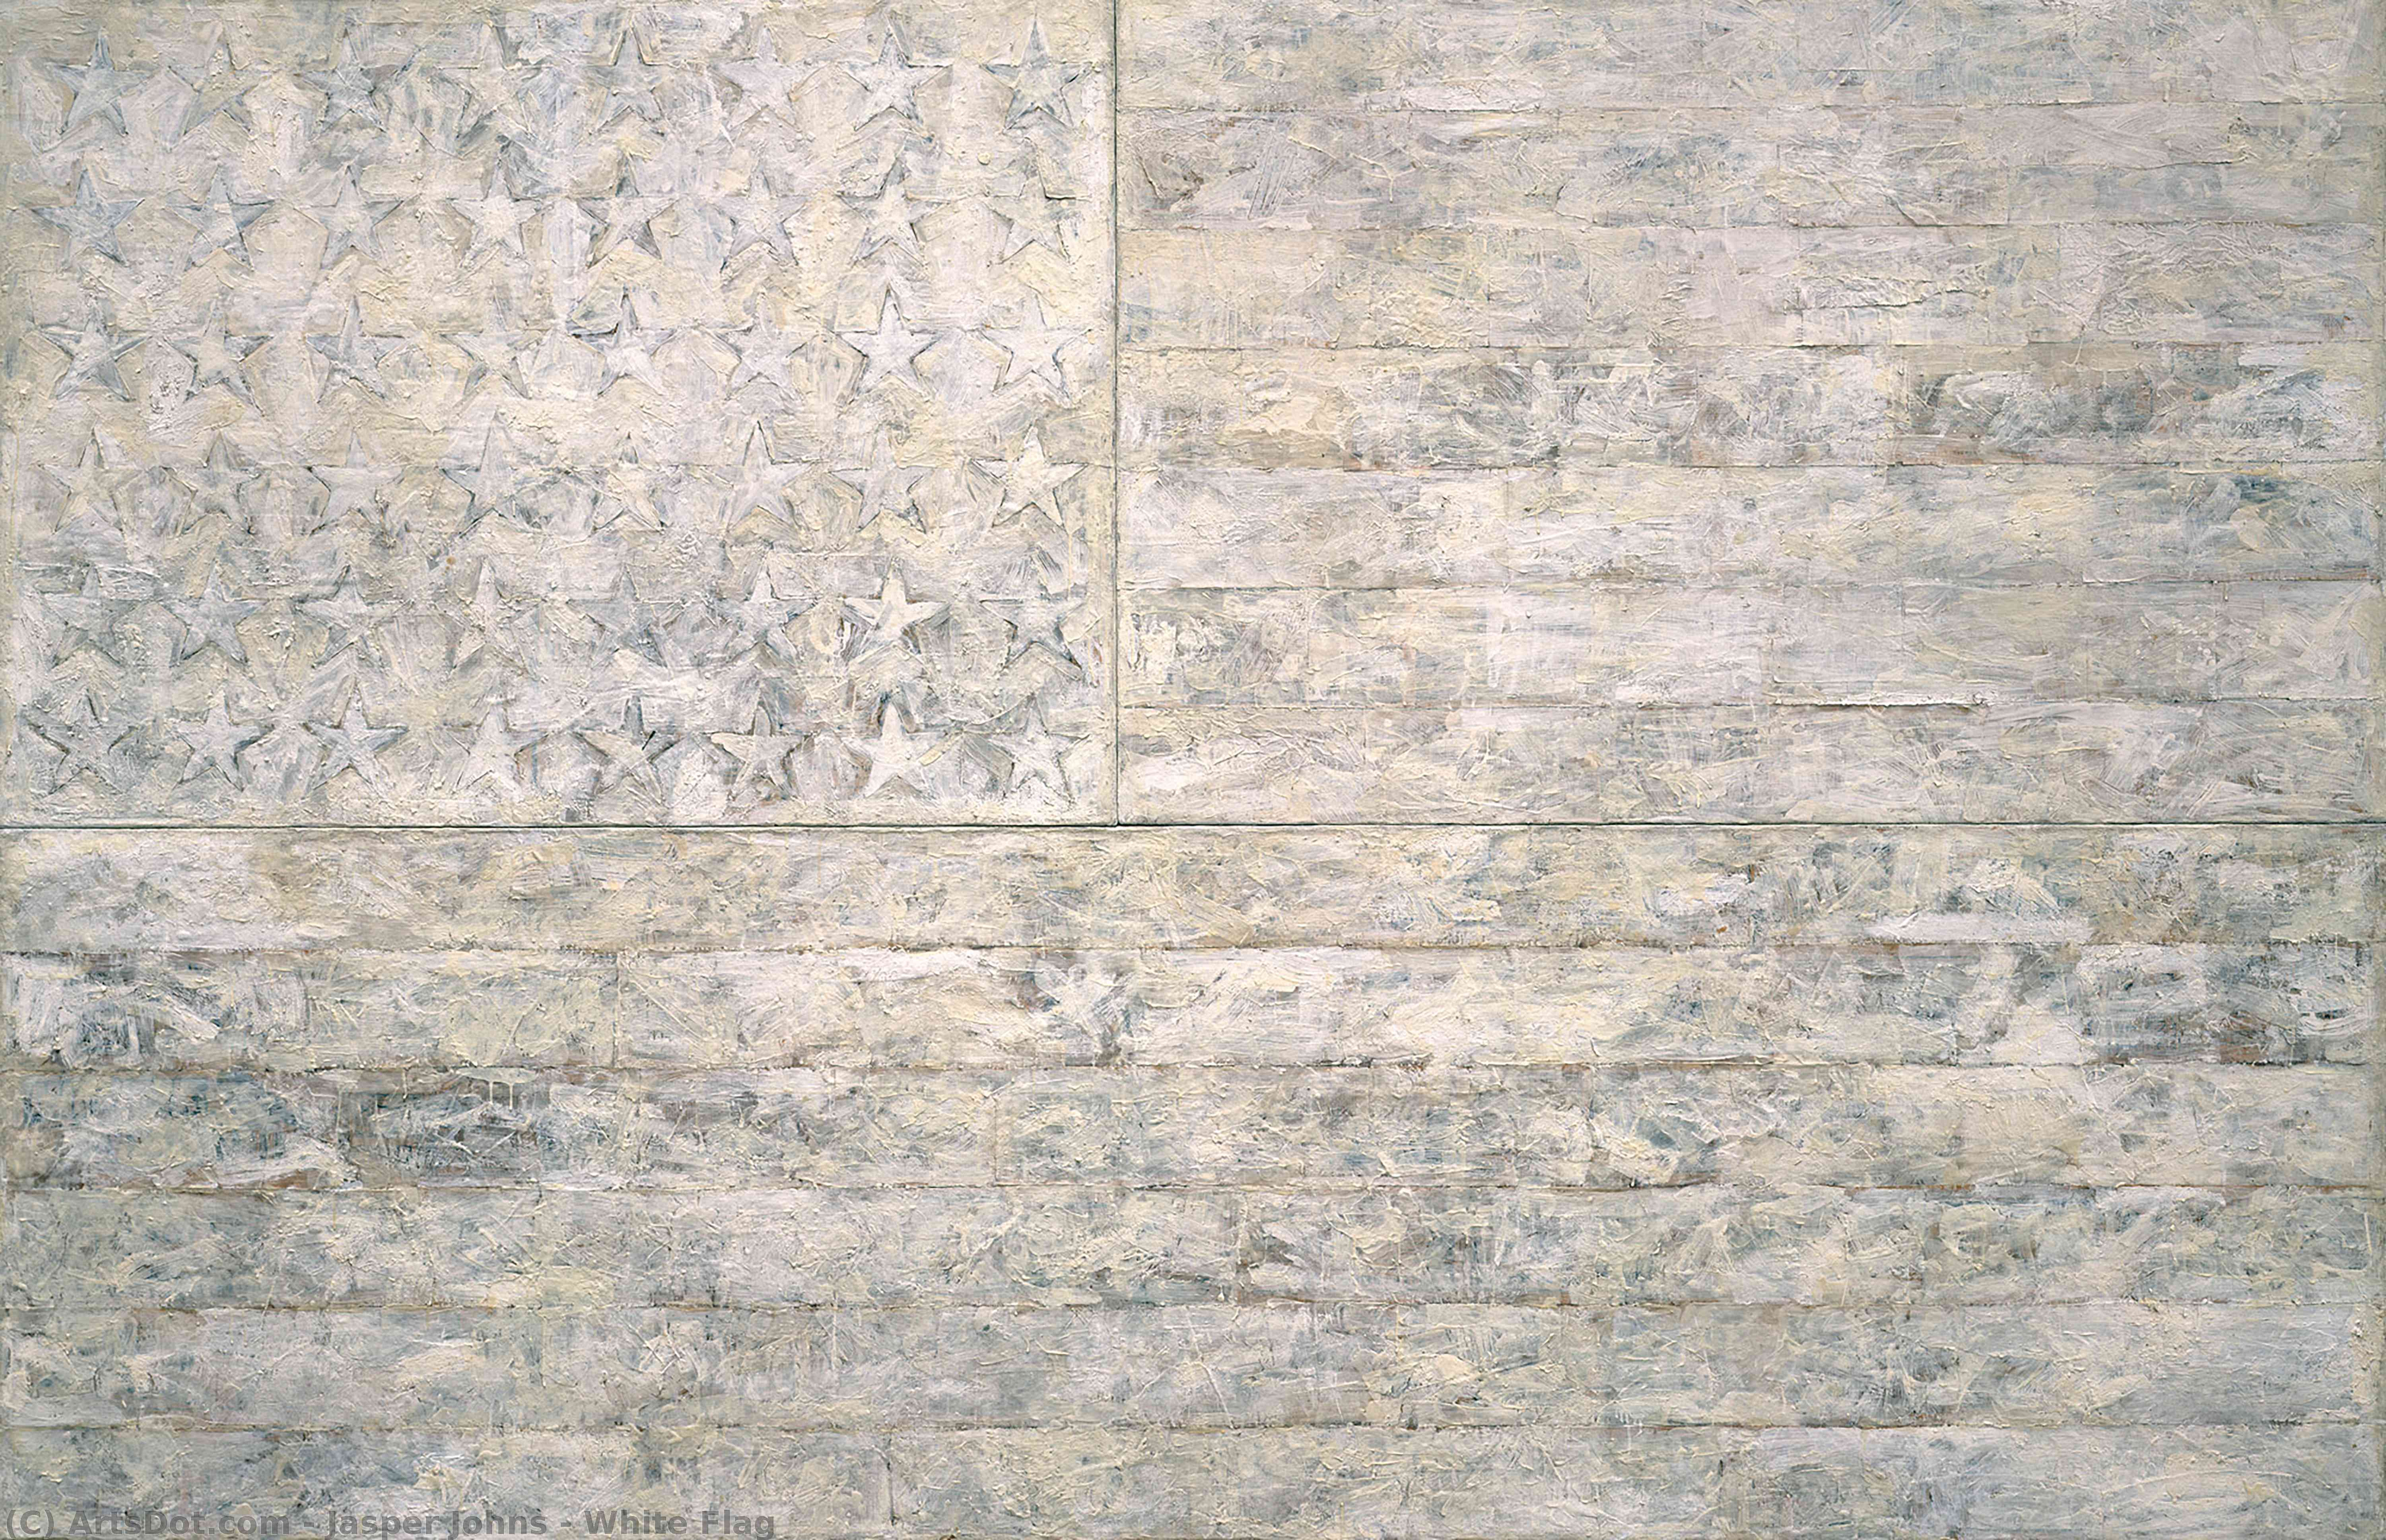 WikiOO.org - Enciclopédia das Belas Artes - Pintura, Arte por Jasper Johns - White Flag